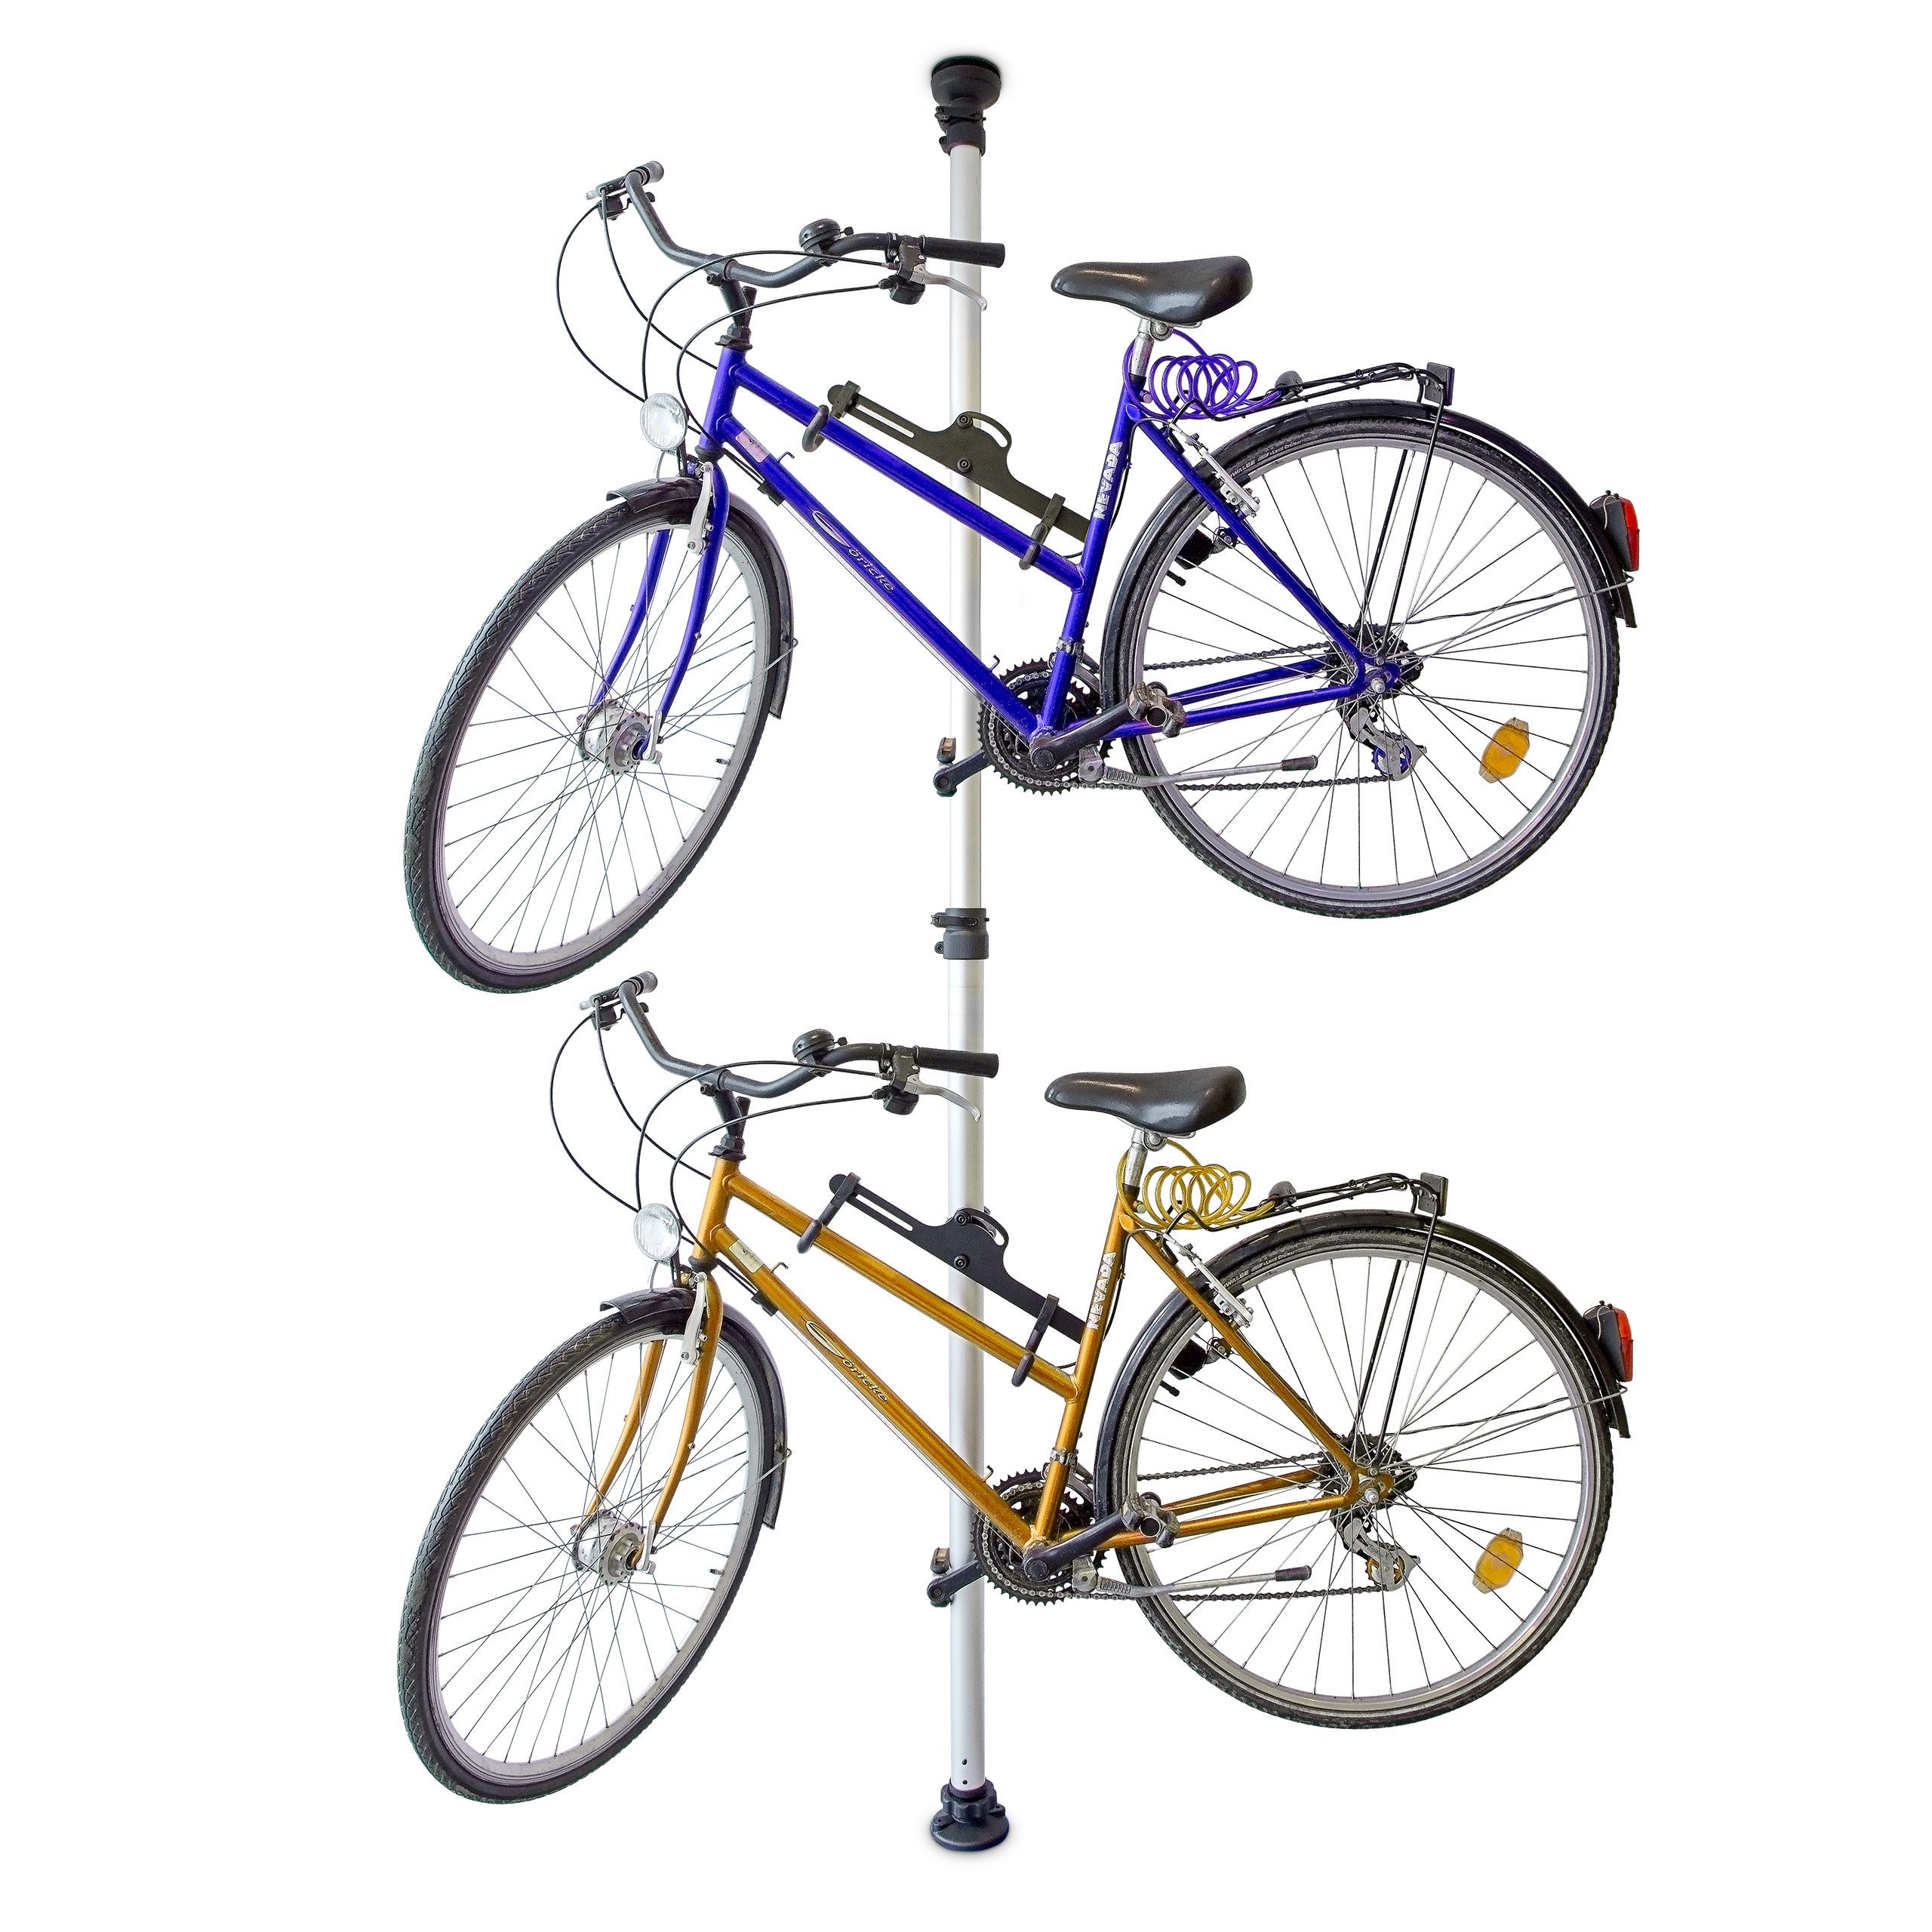 Achetez ICI un porte-vélo mural pour jusqu'à 30 kg